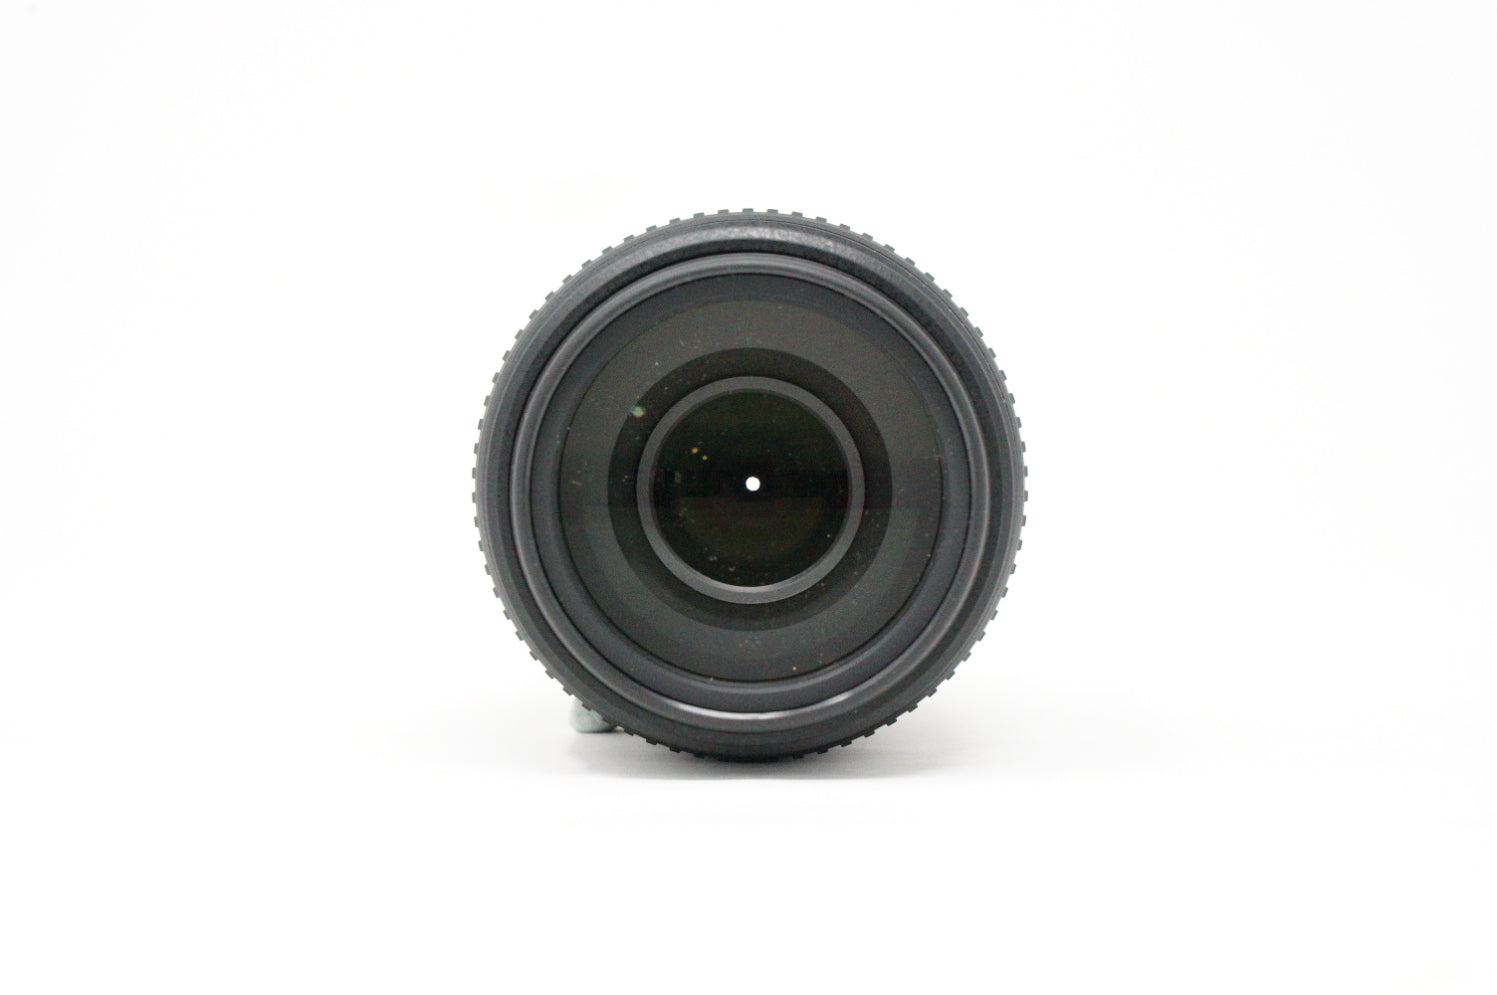 Used Nikon DX Nikkor AF-S 55-300mm F4.5-5.6G VR Lens